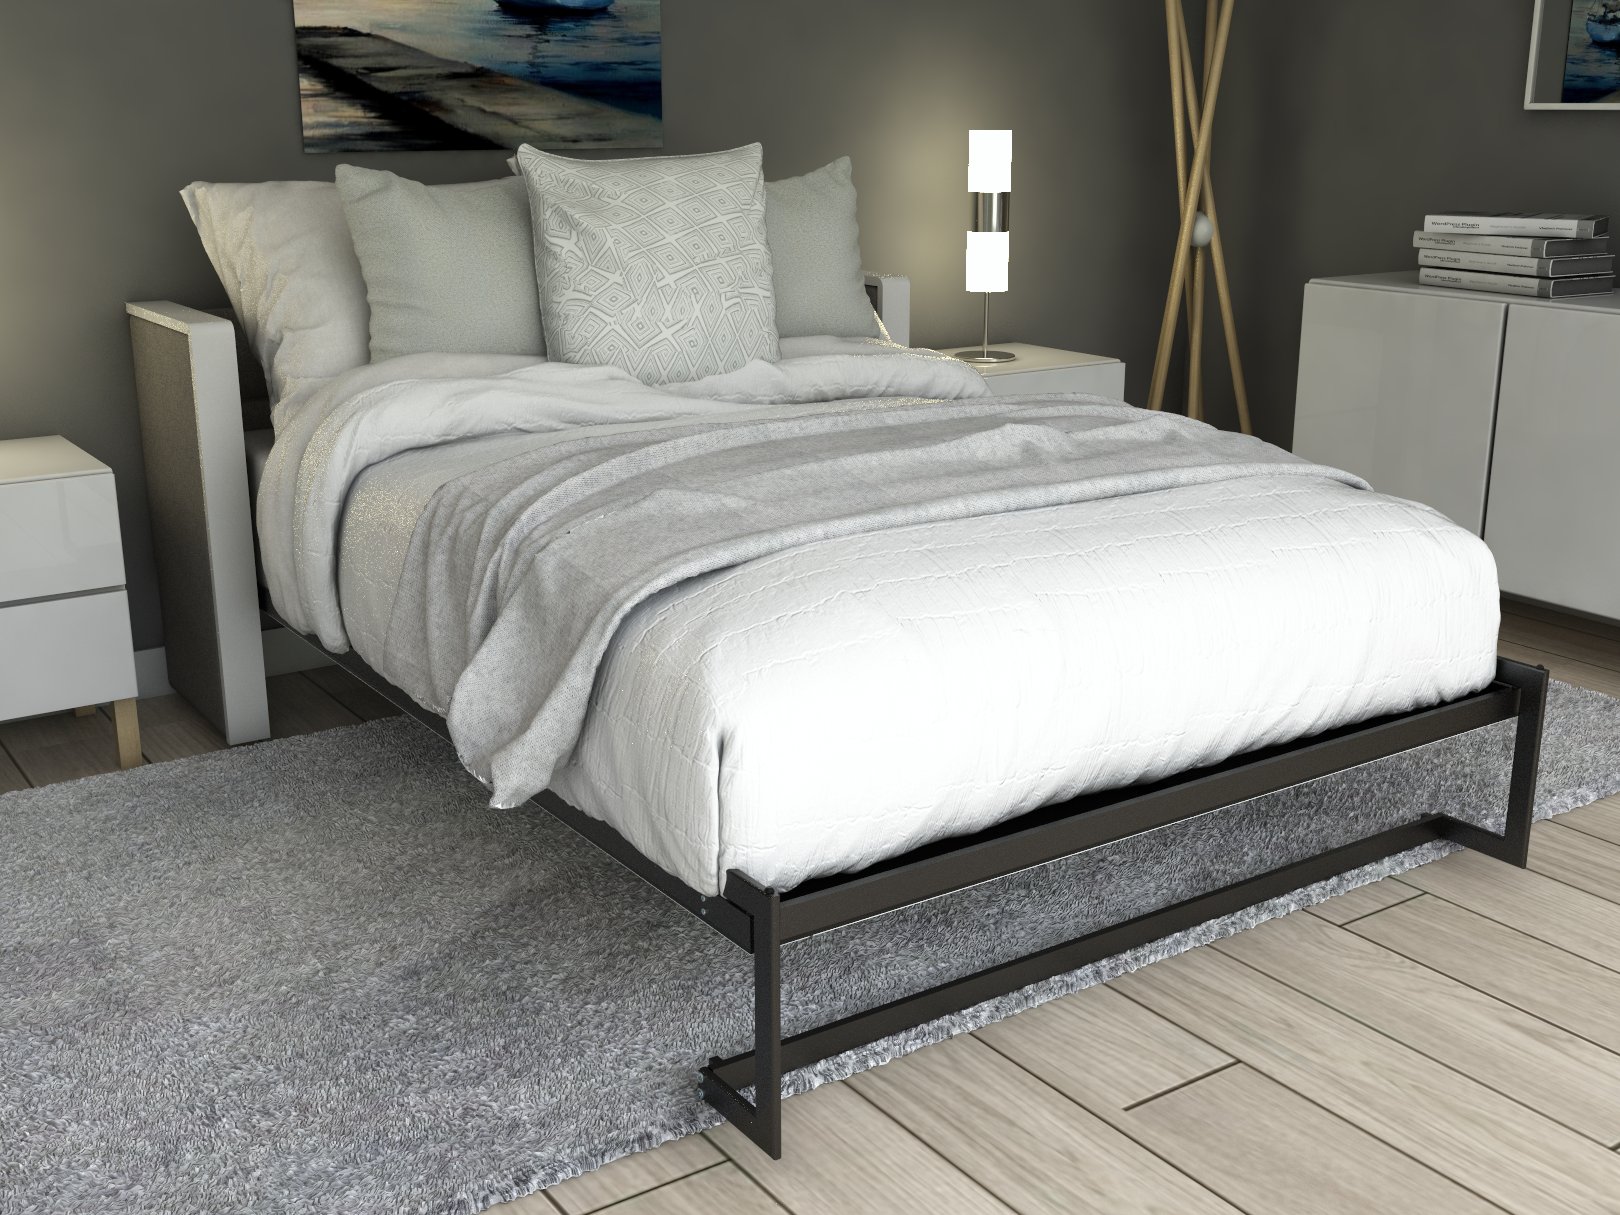 Esentelle base de cama individual con laminado de madera color titanio // MS